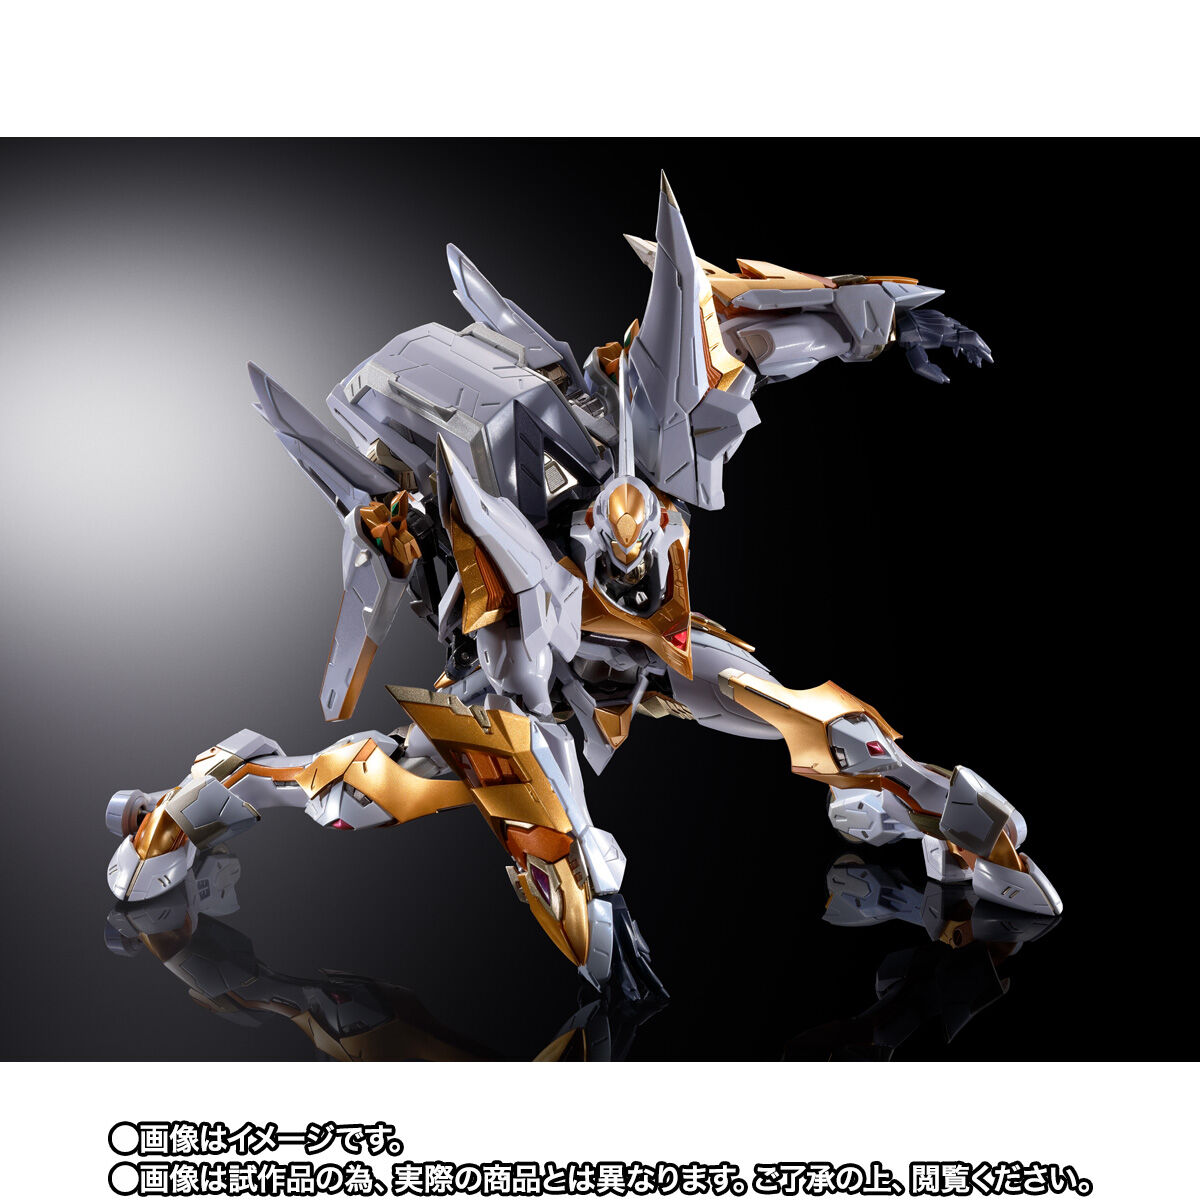 【限定販売】METAL BUILD DRAGON SCALE『ランスロット・アルビオン』コードギアス 反逆のルルーシュR2 可動フィギュア-004